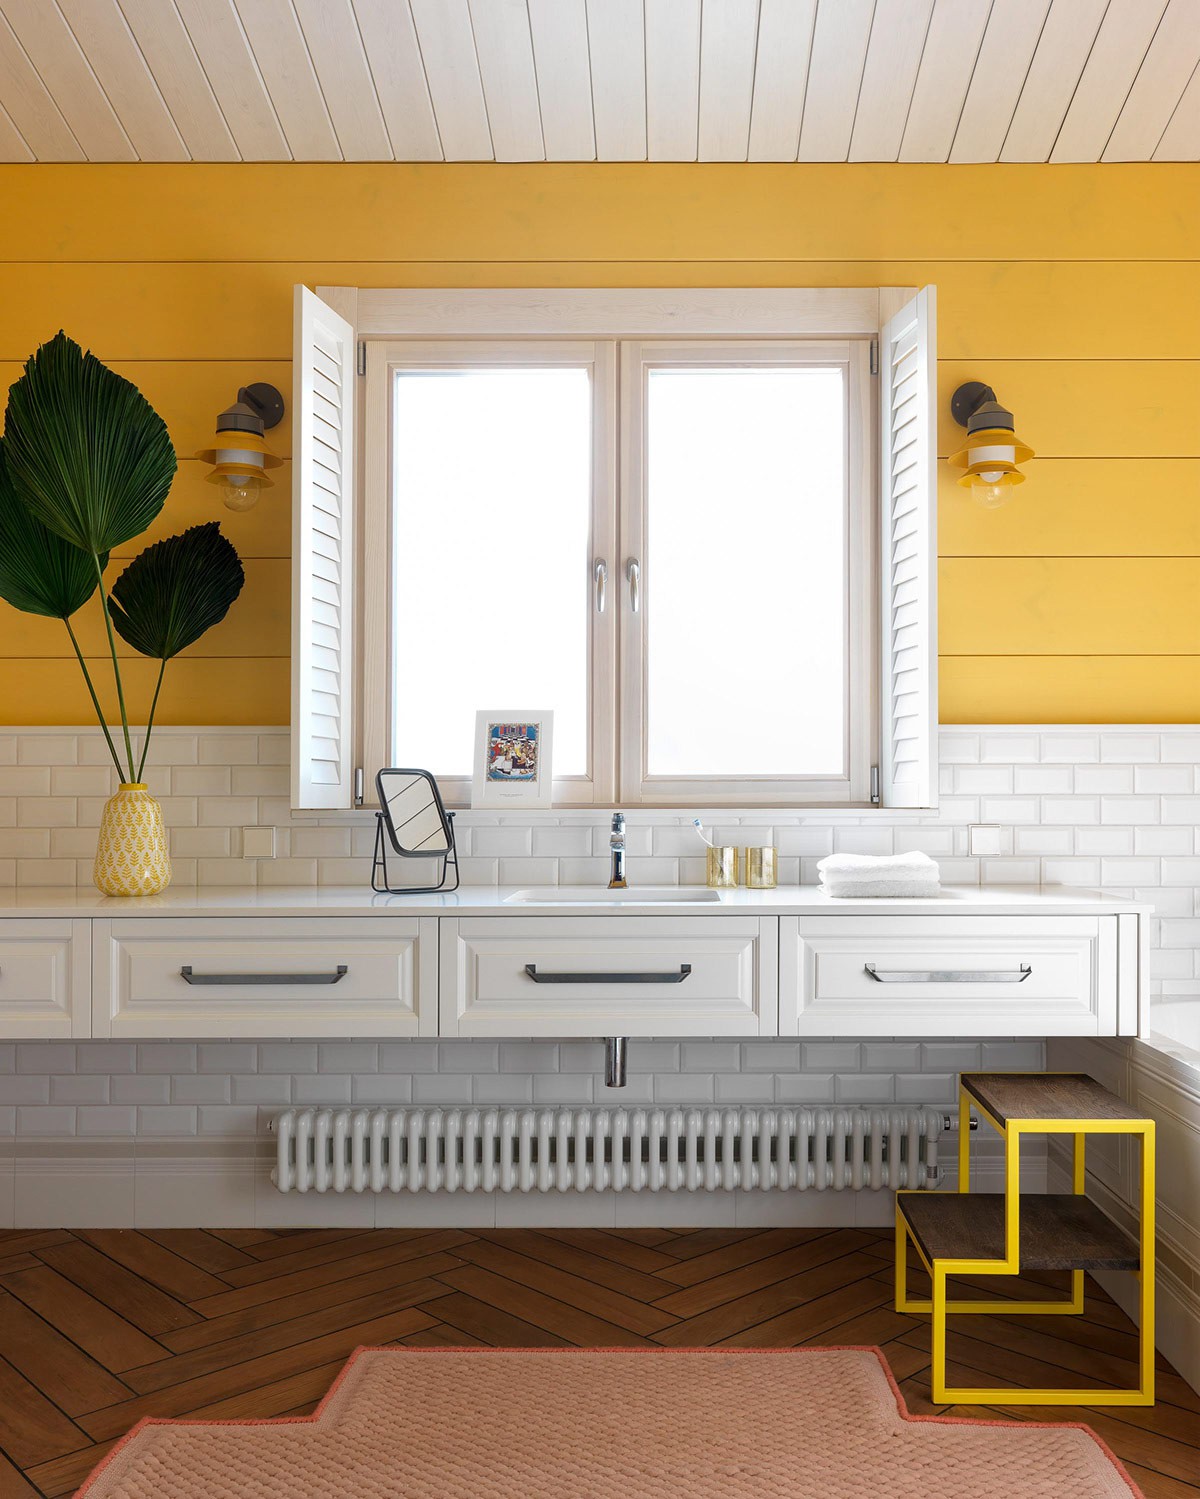 Hình ảnh một góc phòng tắm với tường sơn vàng, cửa sổ kính, ngăn kéo lưu trữ màu trắng